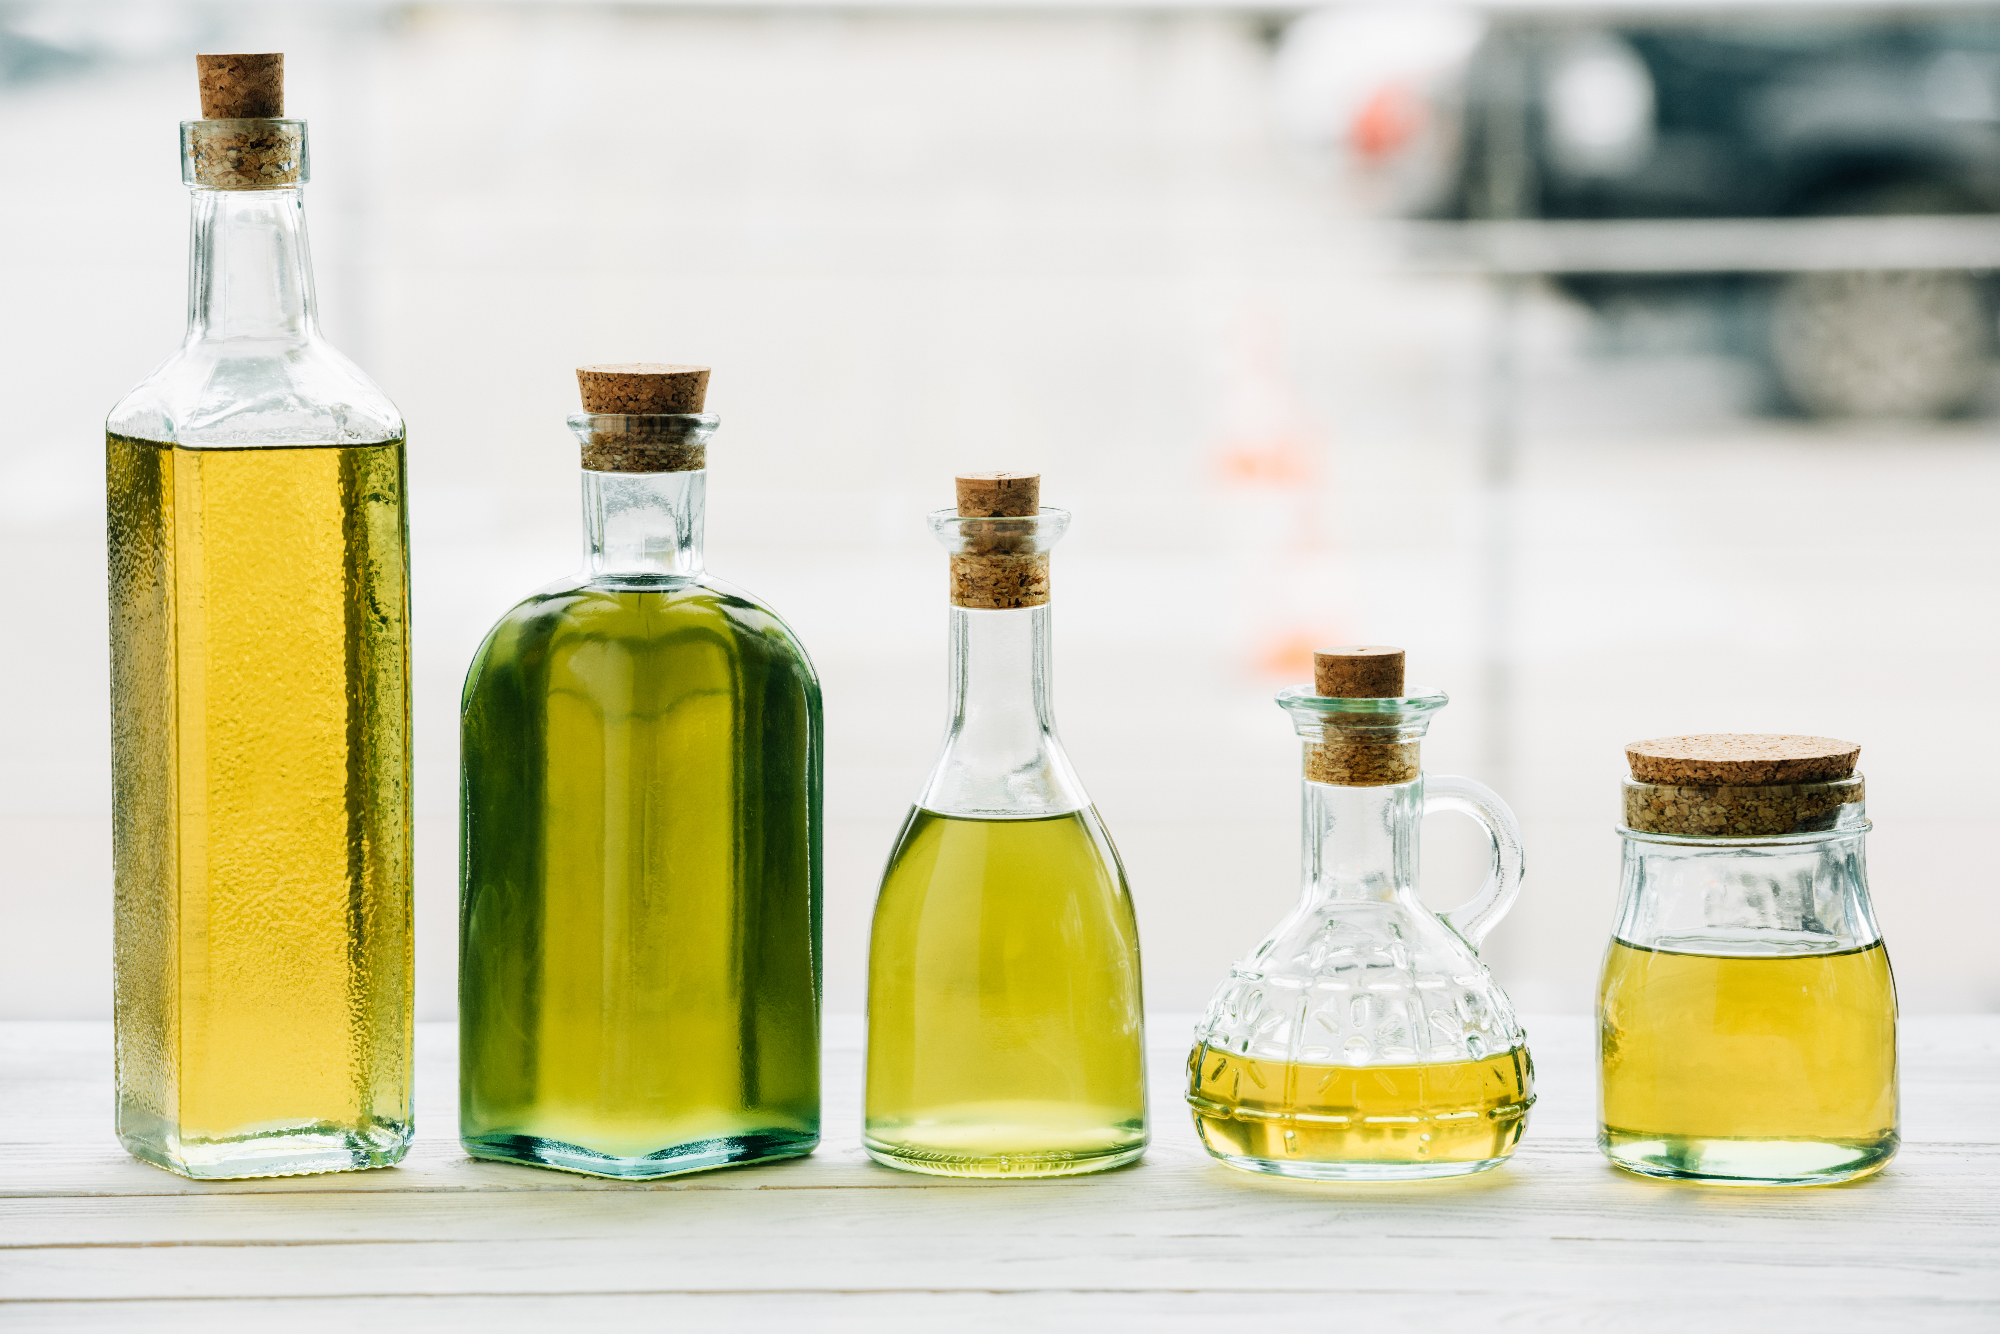 Olivno olje paše res v vsako jed